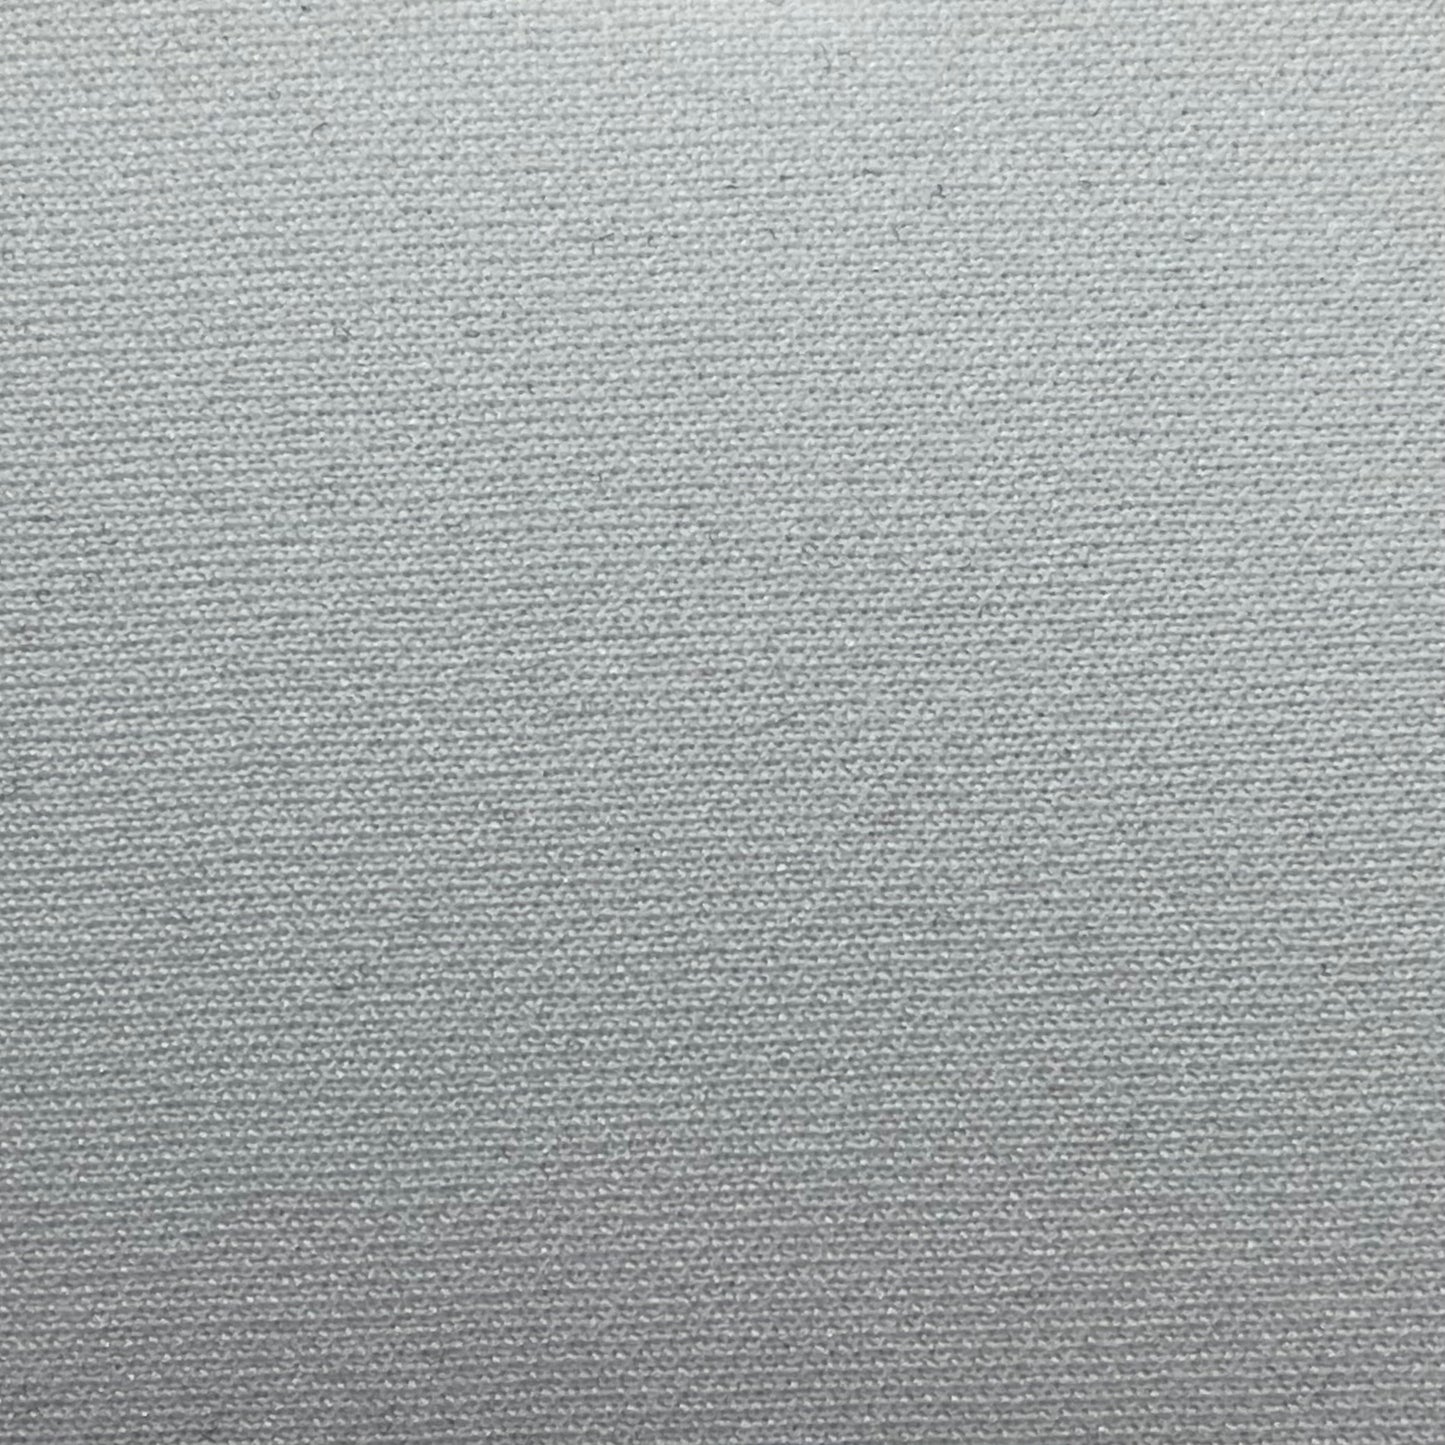 3.0mm B Foam Neoprene (Sold per 1/2 Sheet)